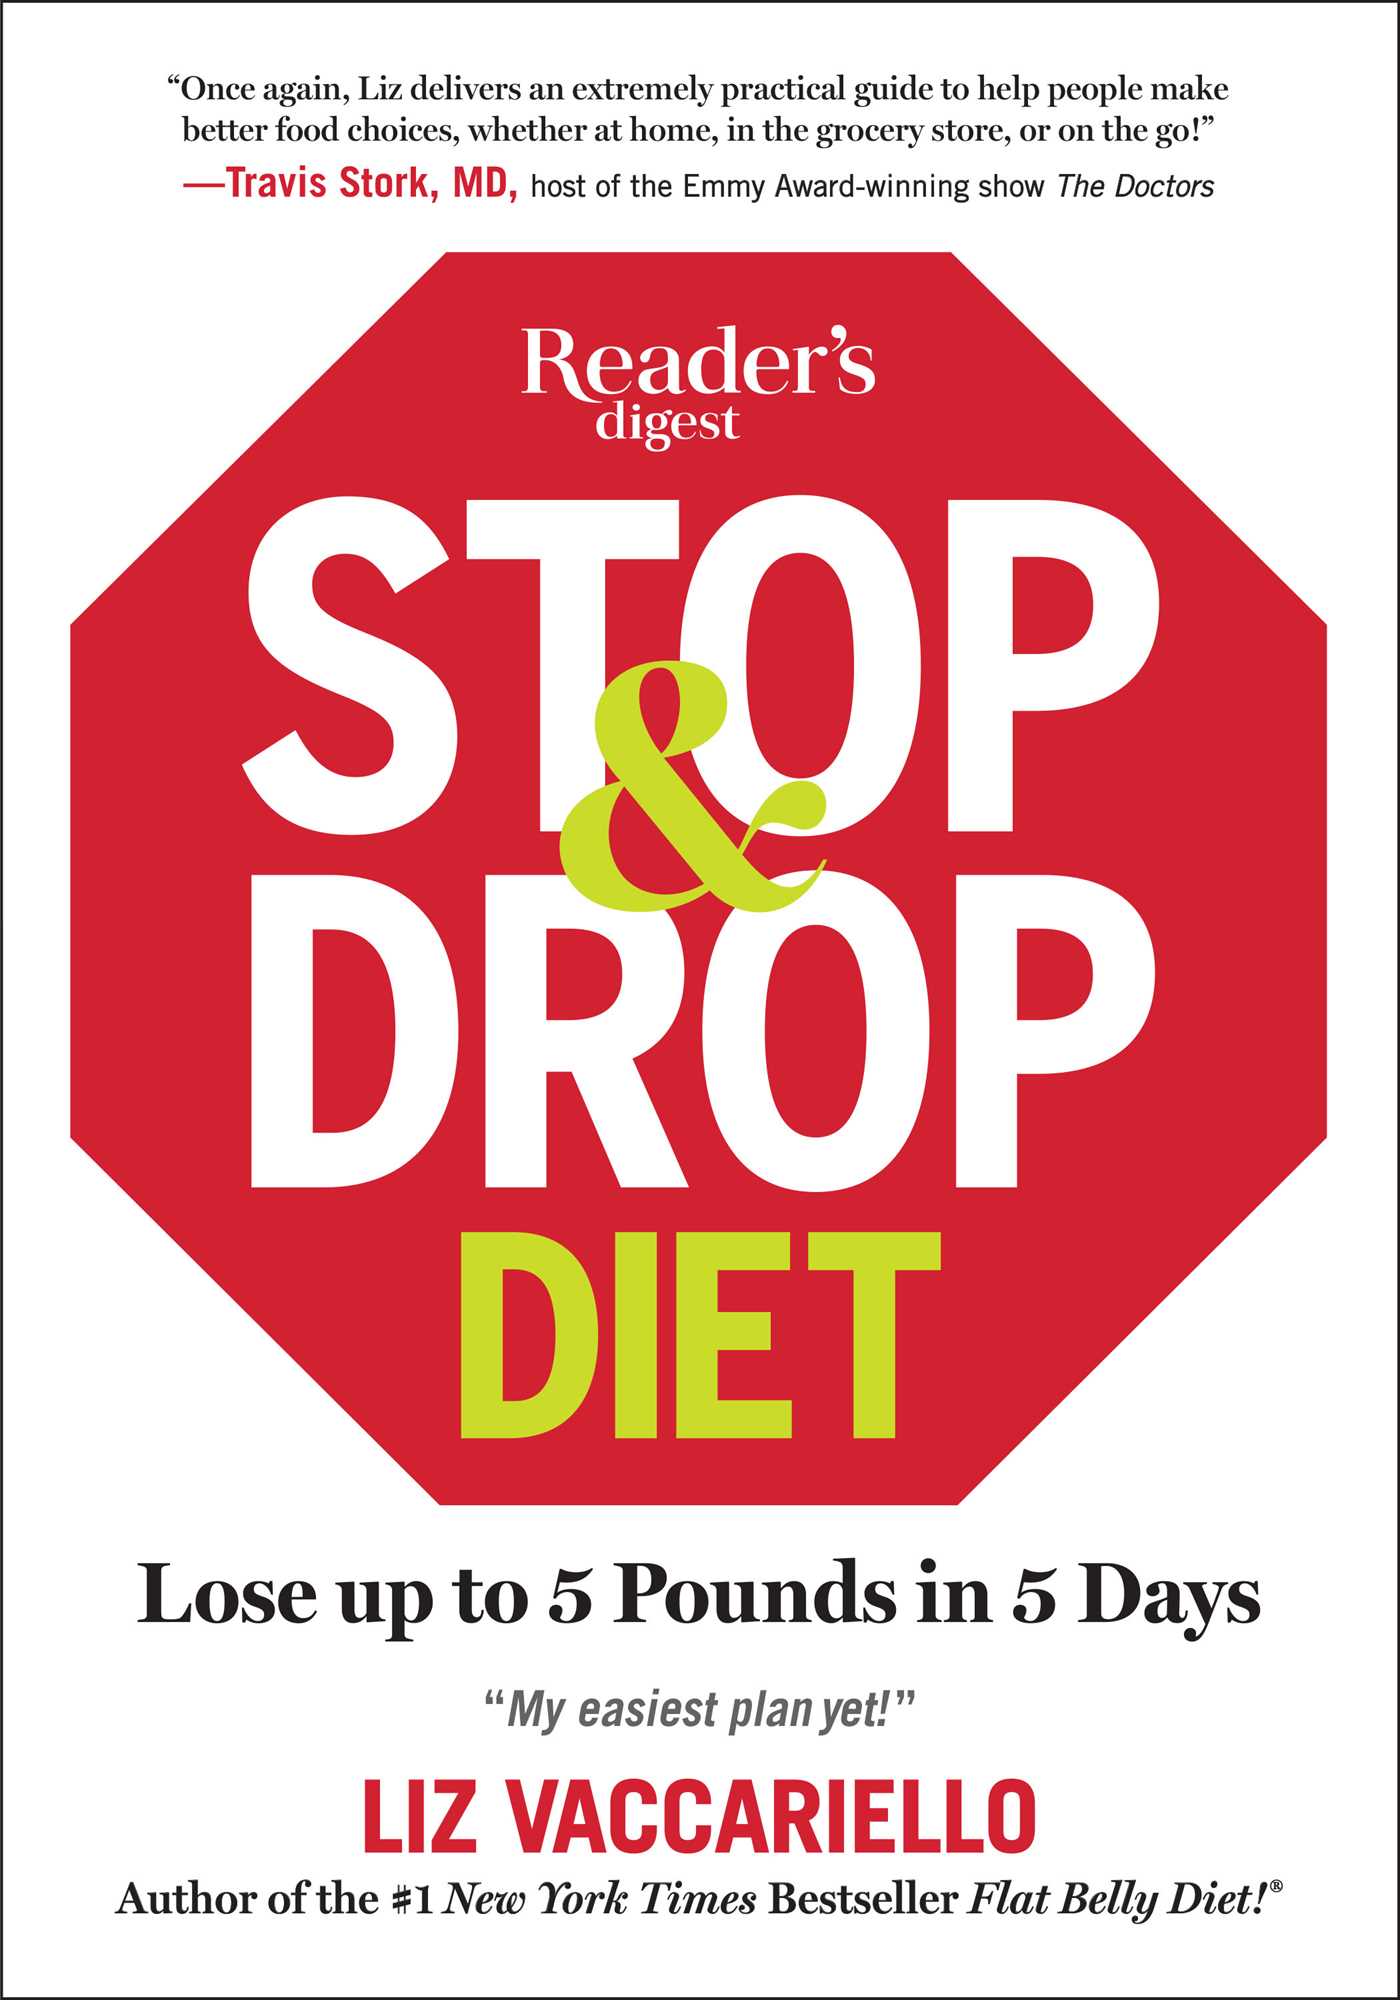 Stop & Drop Diet